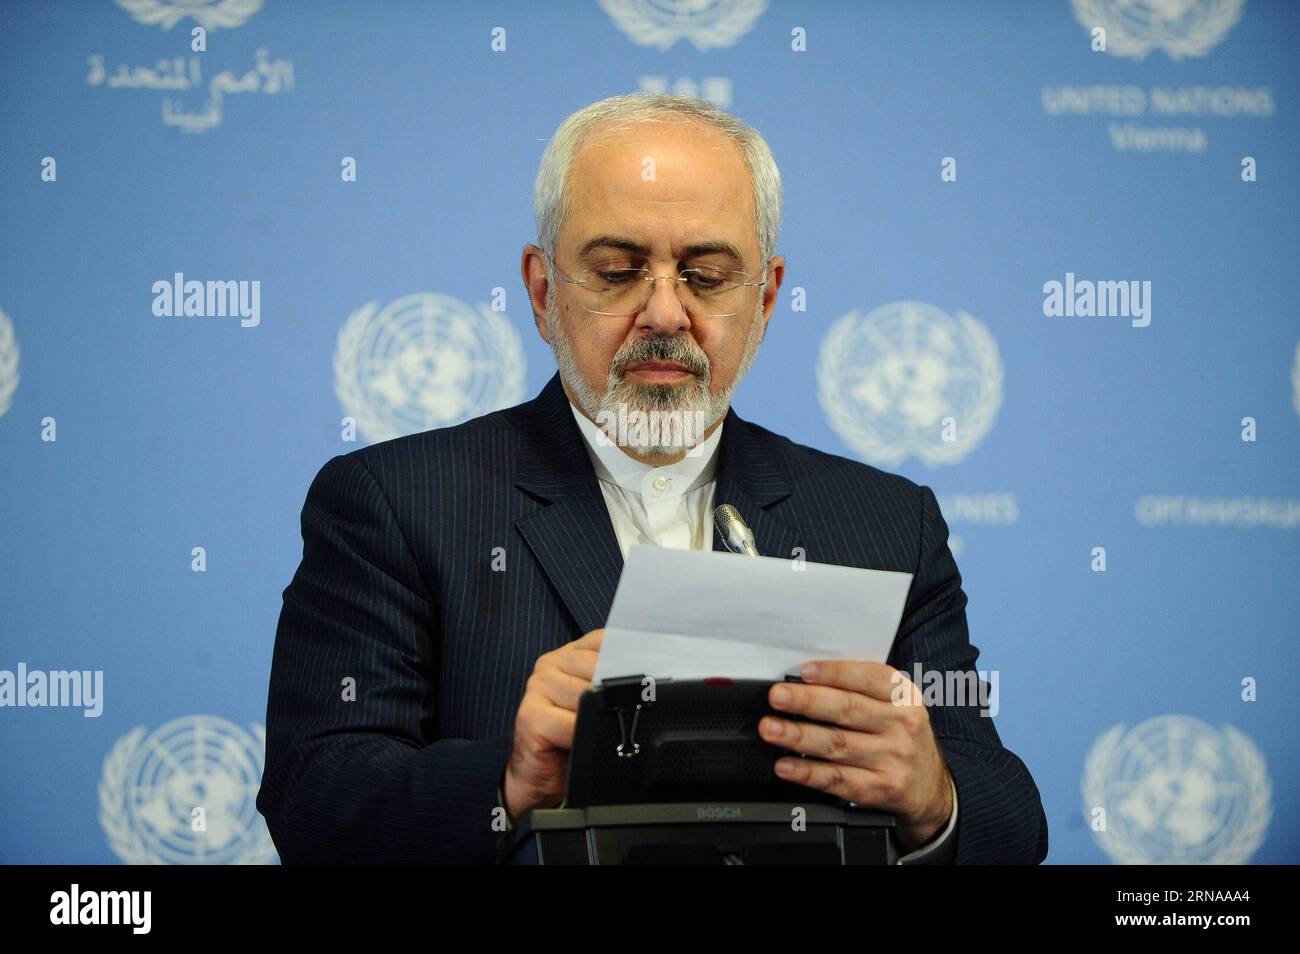 Il ministro degli Esteri iraniano Mohammad Javad Zarif partecipa a una conferenza stampa a Vienna, in Austria, il 16 gennaio 2016. Sabato sera l'Unione europea (UE) e l'Iran hanno annunciato congiuntamente il giorno di attuazione dello storico accordo nucleare dopo che l'Agenzia internazionale per l'energia atomica (AIEA) ha confermato che tutte le fasi di preparazione richieste sono state completate da Teheran. L'UE ha revocato le sue sanzioni economiche contro l'Iran dopo l'annuncio dell'AIEA. ) AUSTRIA-VIENNA-UE-IRAN-EUCLEAR DEAL IMPLEMENTATION-SANCTIONS-REMOVED QianxYi PUBLICATIONxNOTxINxCHN i ministri degli Esteri iraniani Mohammad Javad Zarif partecipano a una stampa Foto Stock